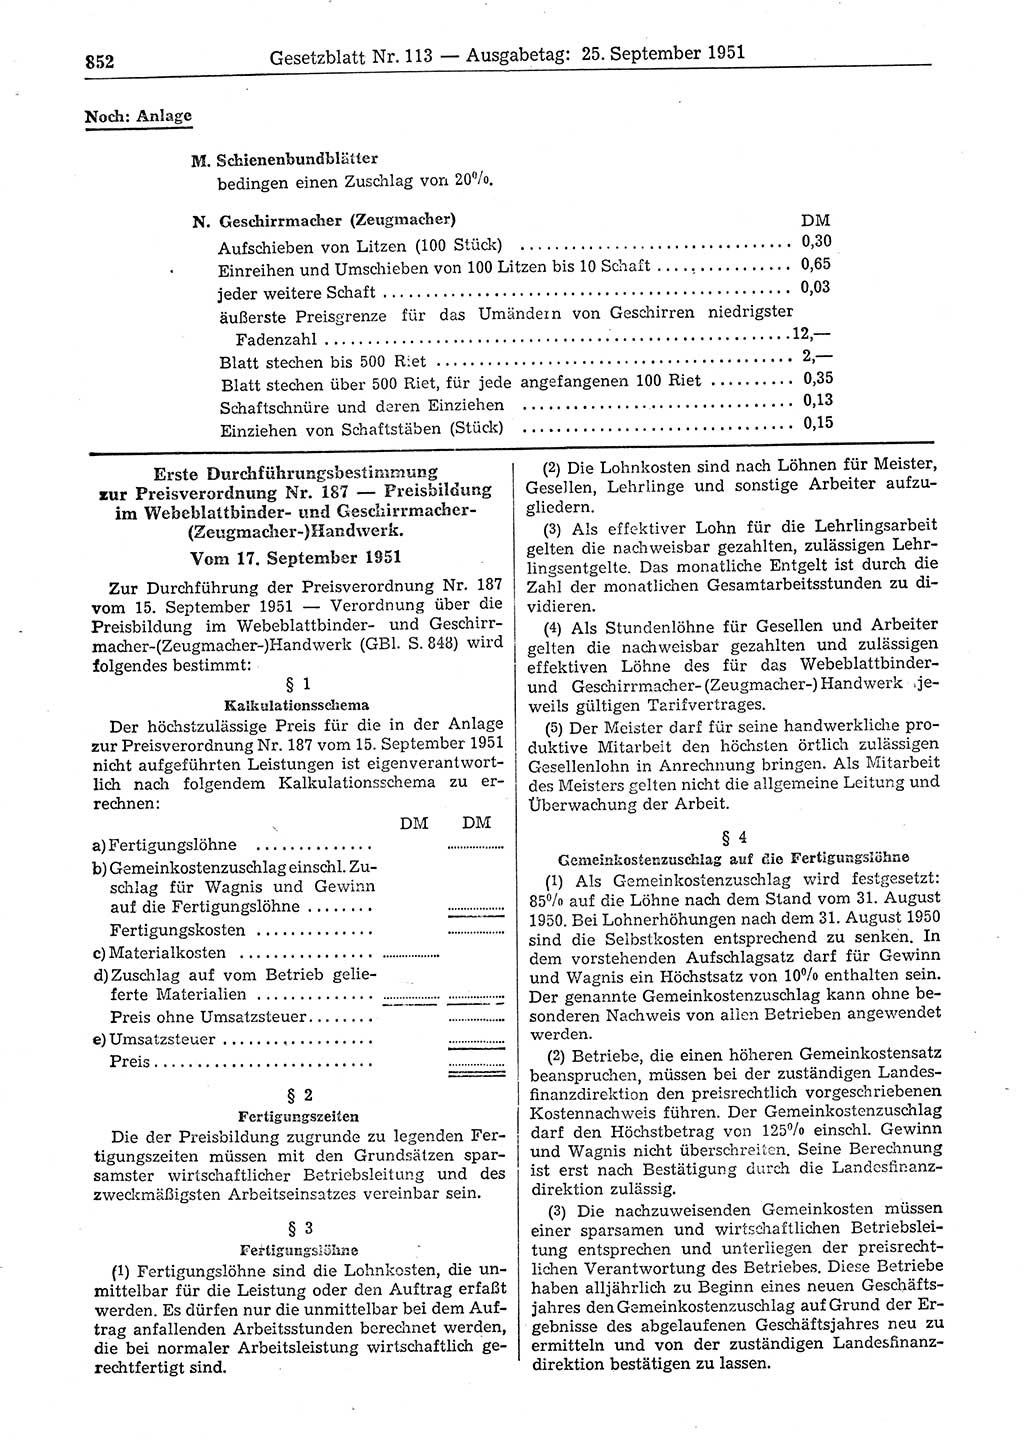 Gesetzblatt (GBl.) der Deutschen Demokratischen Republik (DDR) 1951, Seite 852 (GBl. DDR 1951, S. 852)